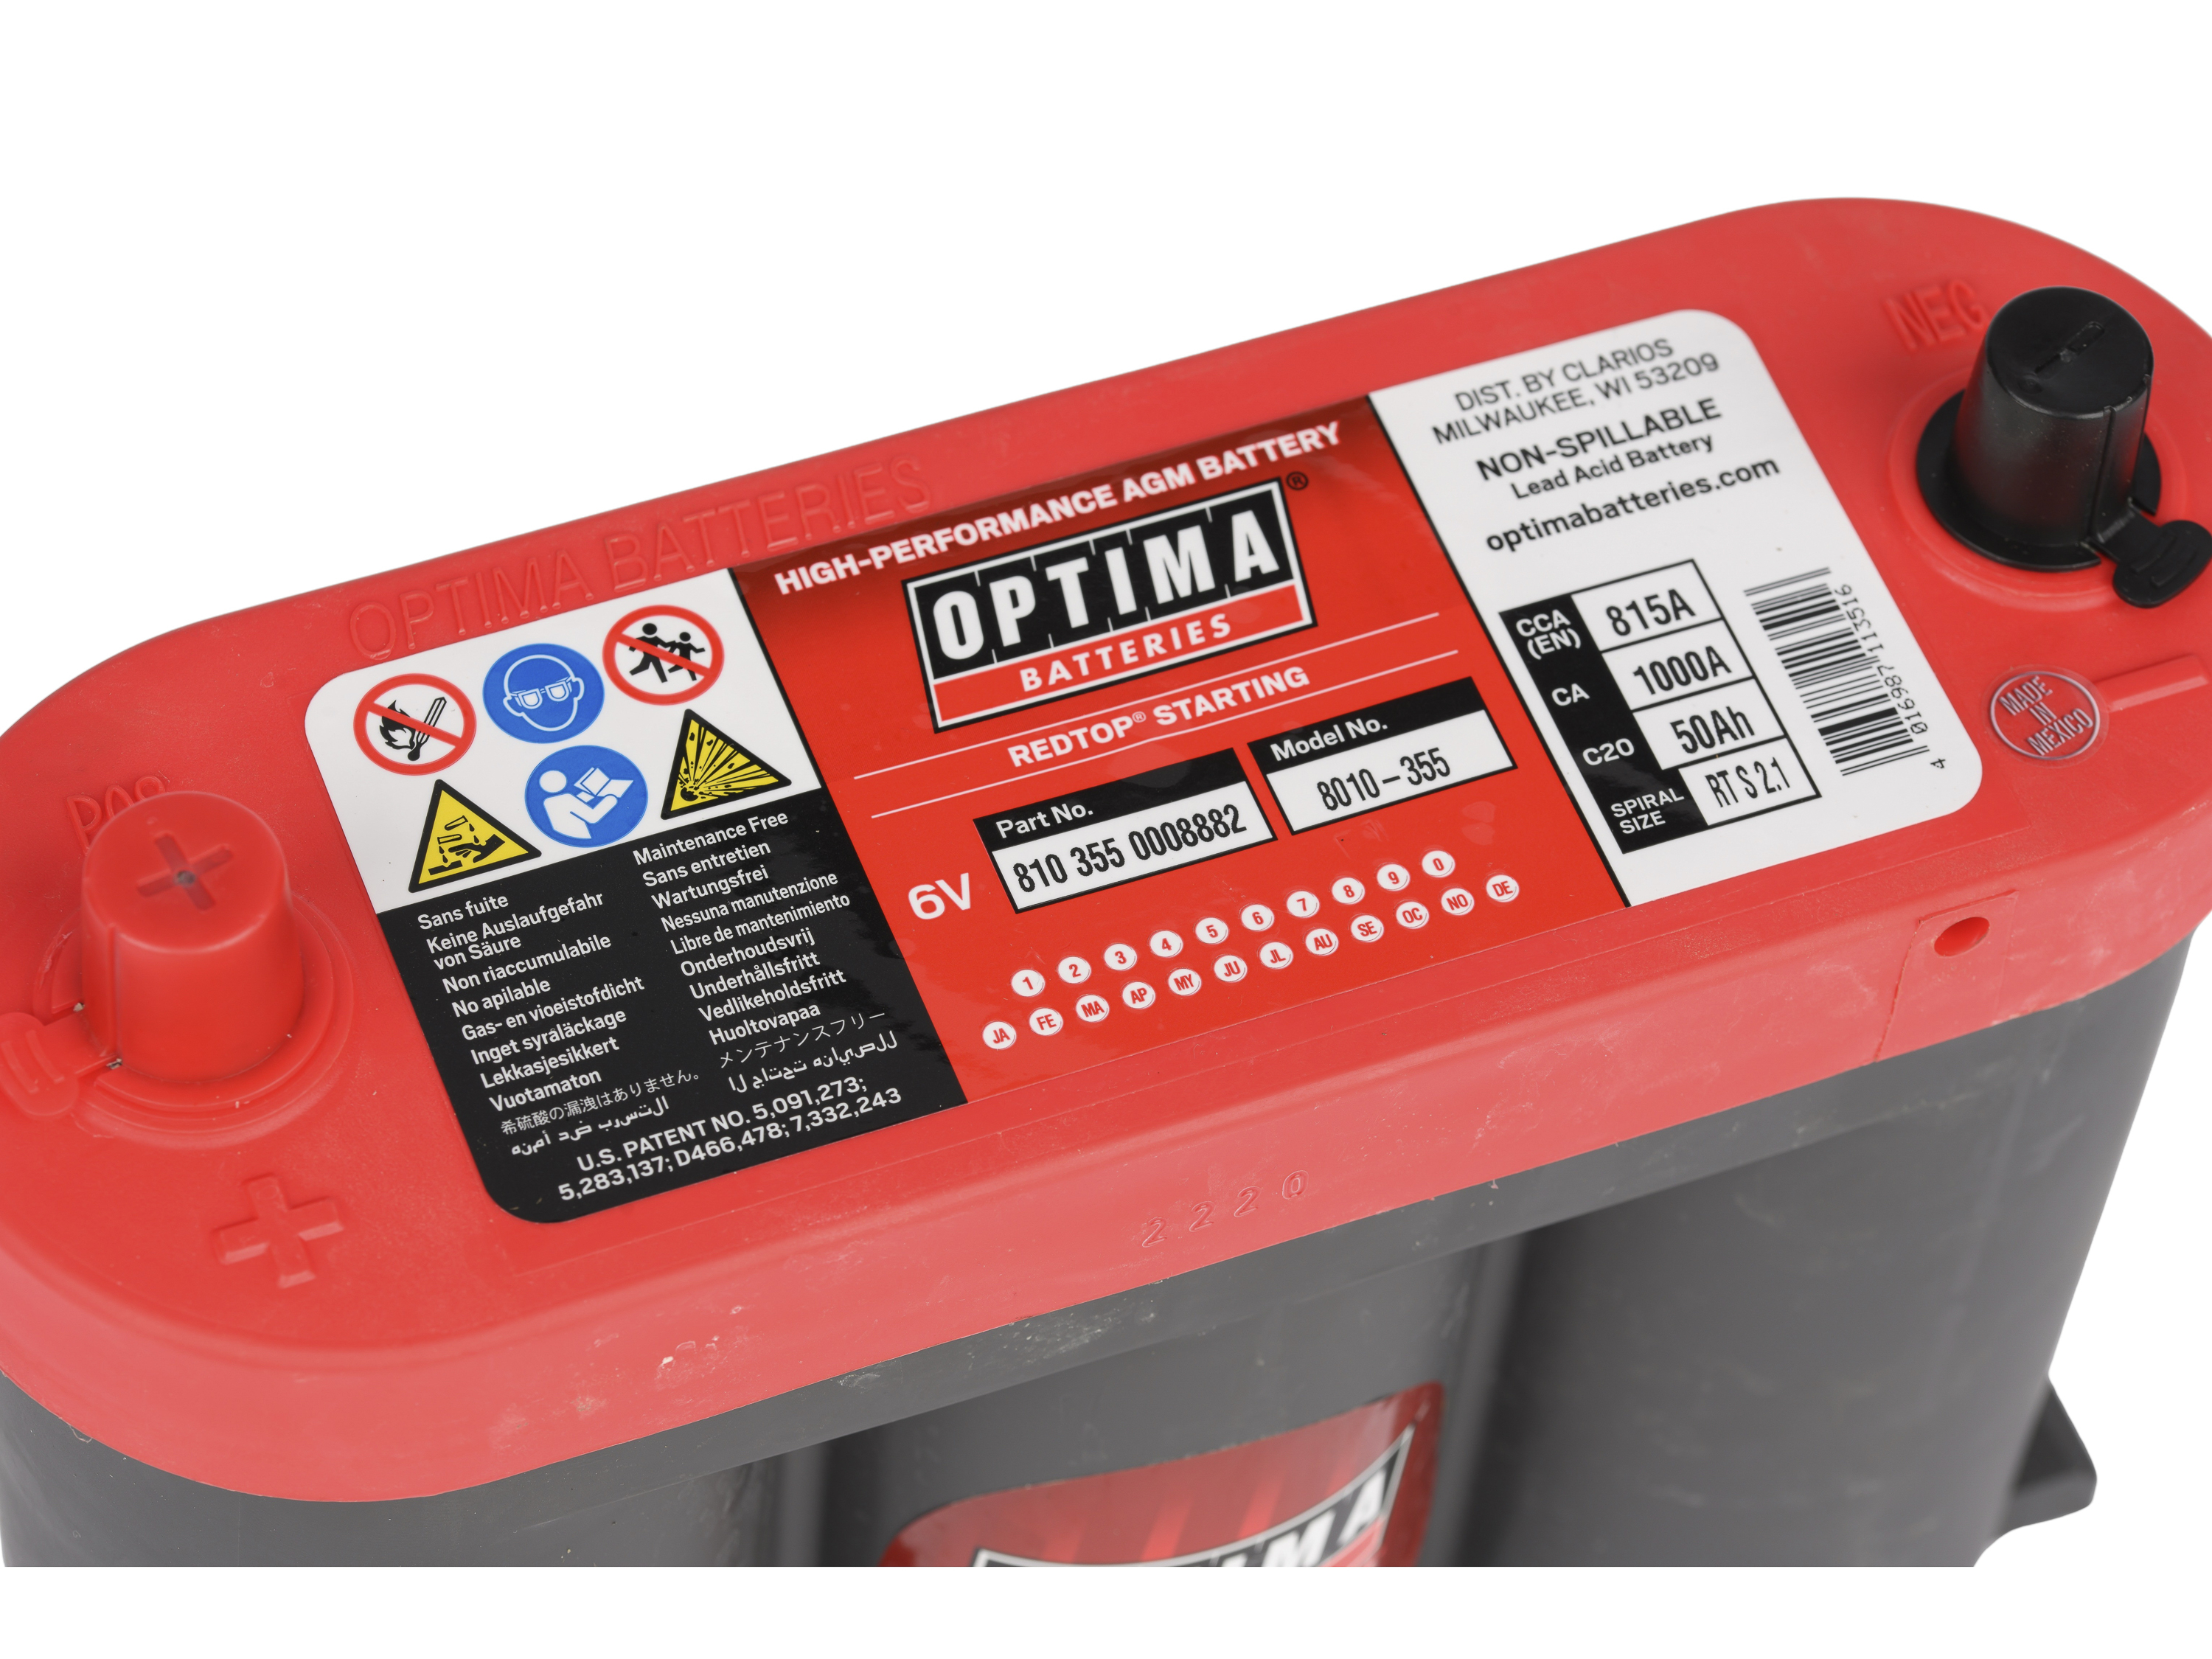 Batteria Optima Red Top S-2.1 (6 V) 50 Ah 815CCA - 810355000